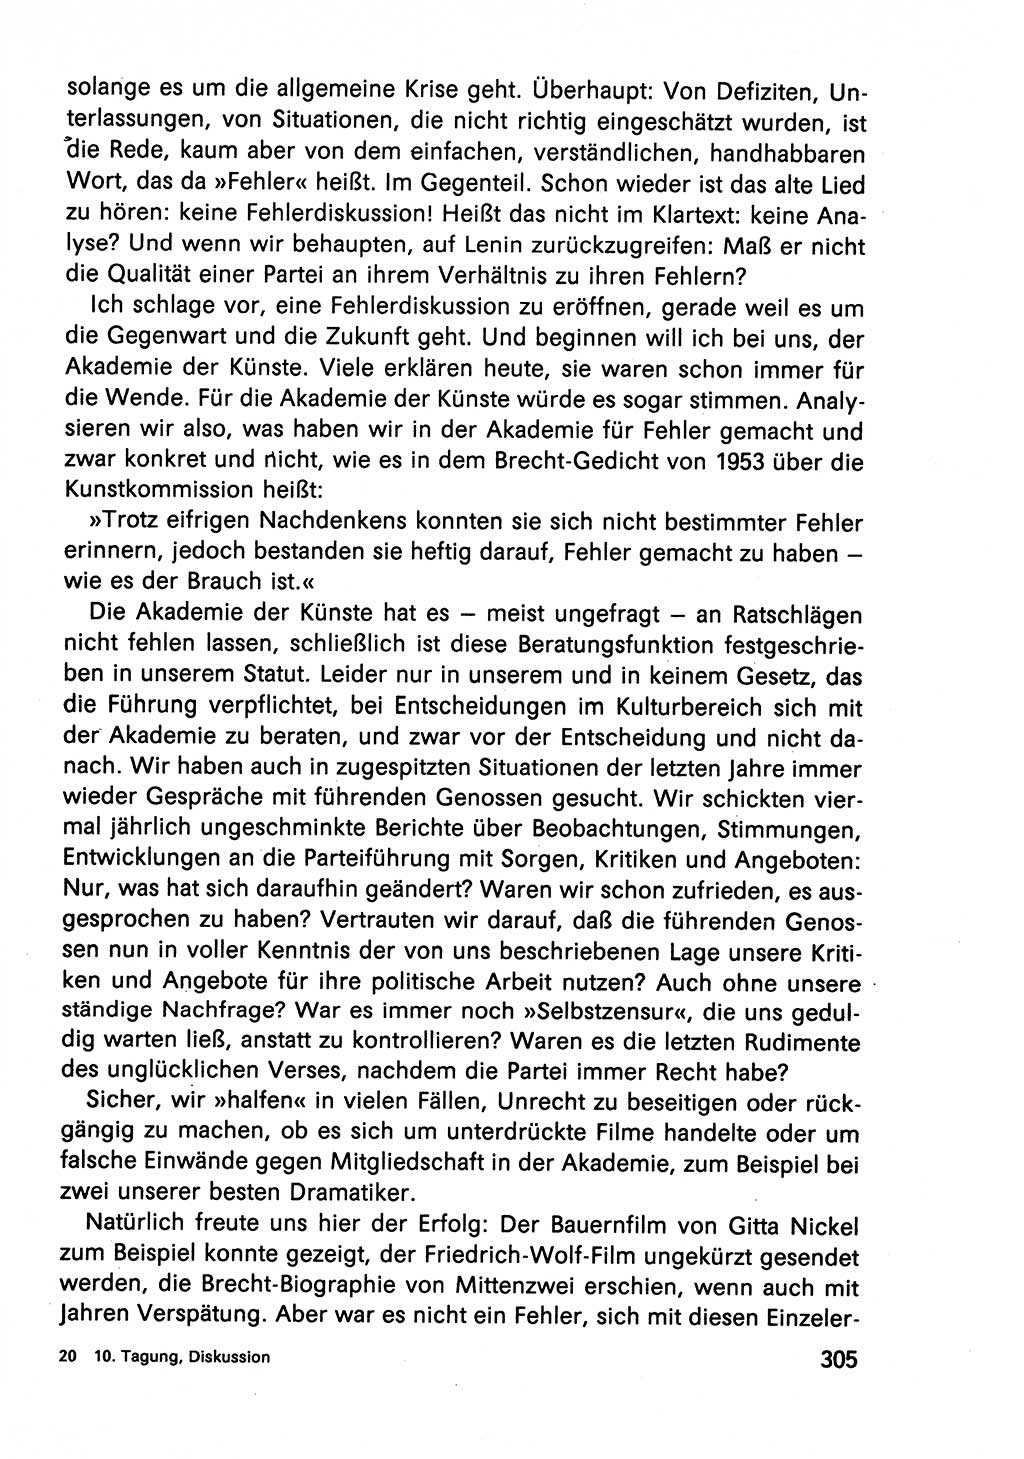 Diskussionsbeiträge, 10. Tagung des ZK (Zentralkomitee) der SED (Sozialistische Einheitspartei Deutschlands) [Deutsche Demokratische Republik (DDR)] 1989, Seite 305 (Disk.-Beitr. 10. Tg. ZK SED DDR 1989, S. 305)